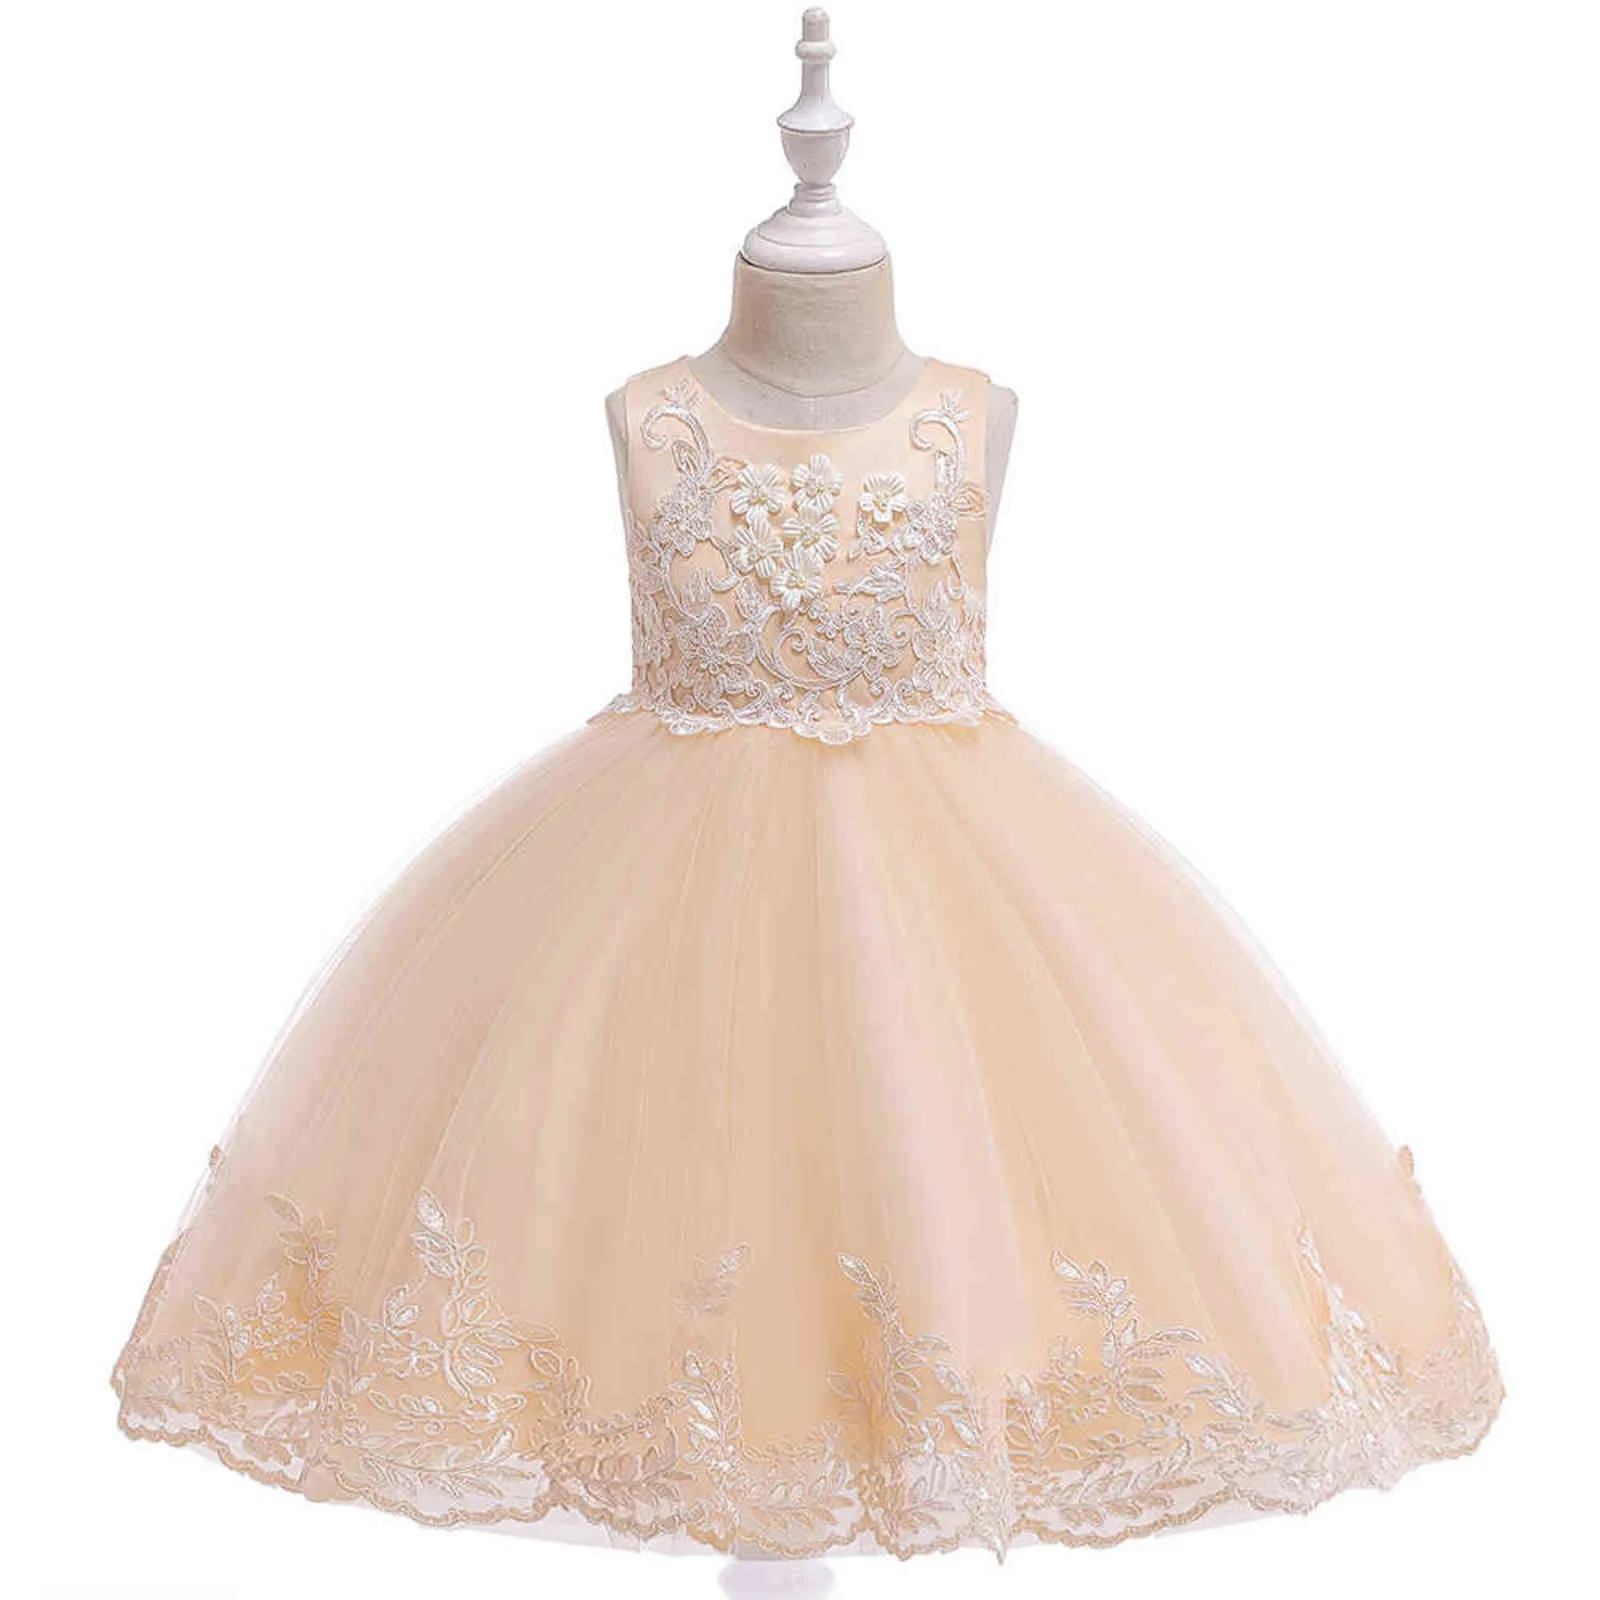 Applique kant meisje jurk feest meisje zomerjurken verjaardag prinses bruiloft bruidsmeisje babyjurken vestidos 3-10 jaar L5097 G1129